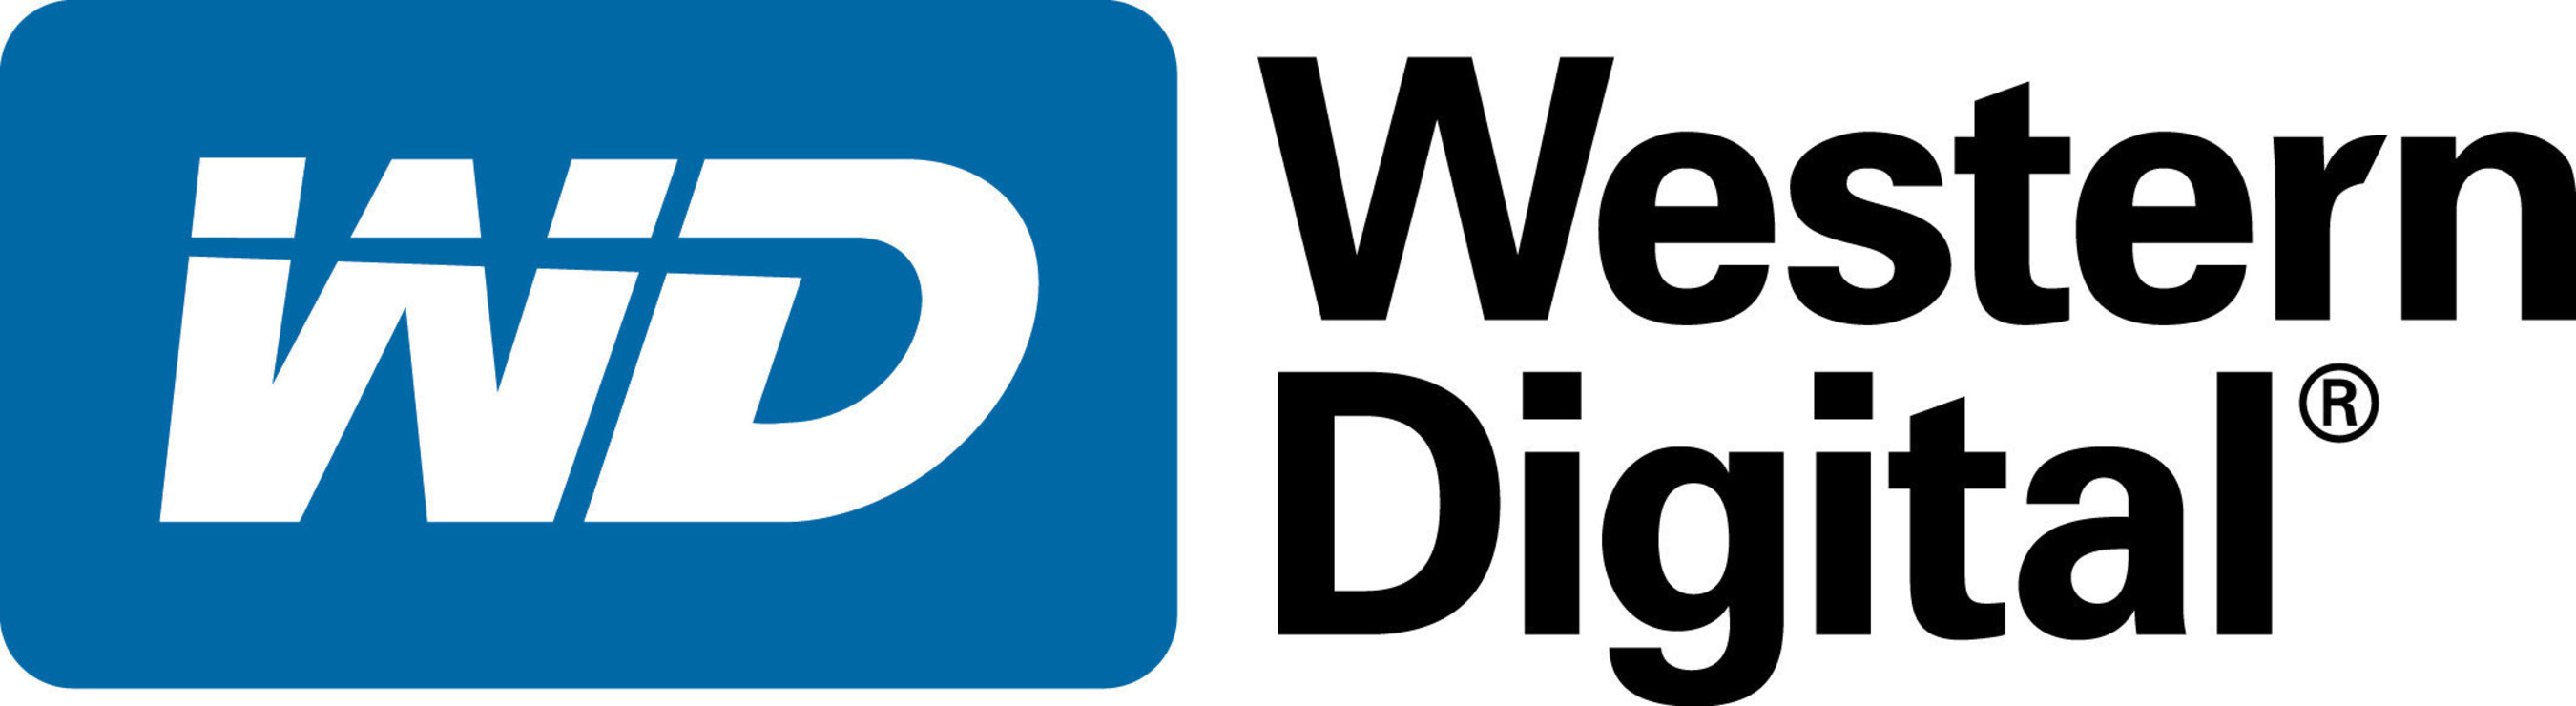 Western Digital Corporation (PRNewsFoto/HGST, A Western Digital Brand)